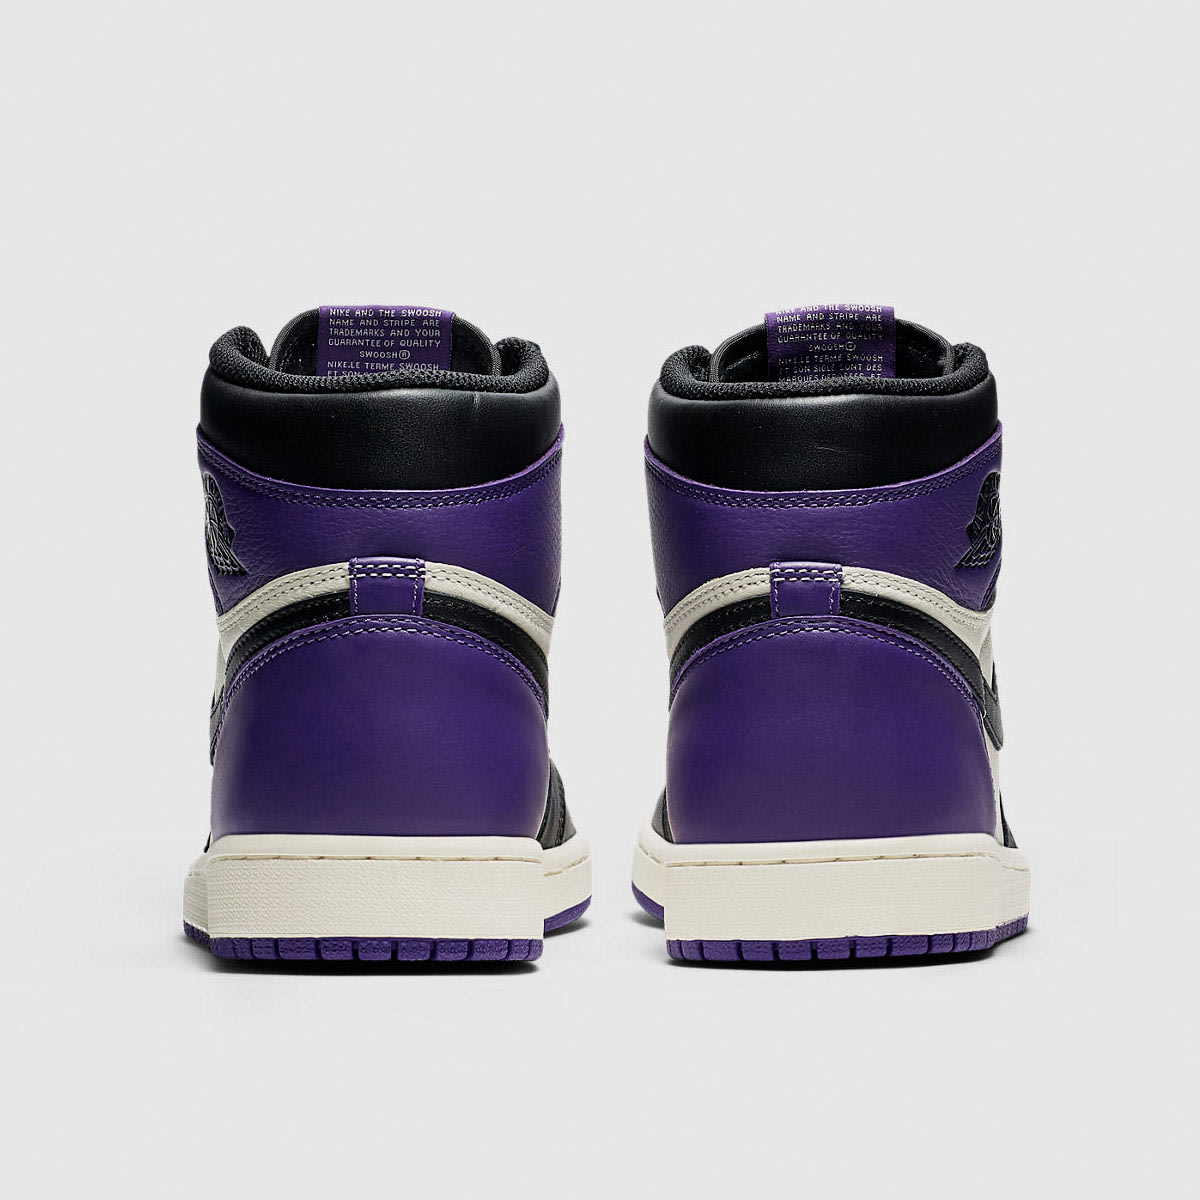 Nike Air Jordan 1 Retro High OG (Court Purple & White) | END. Launches